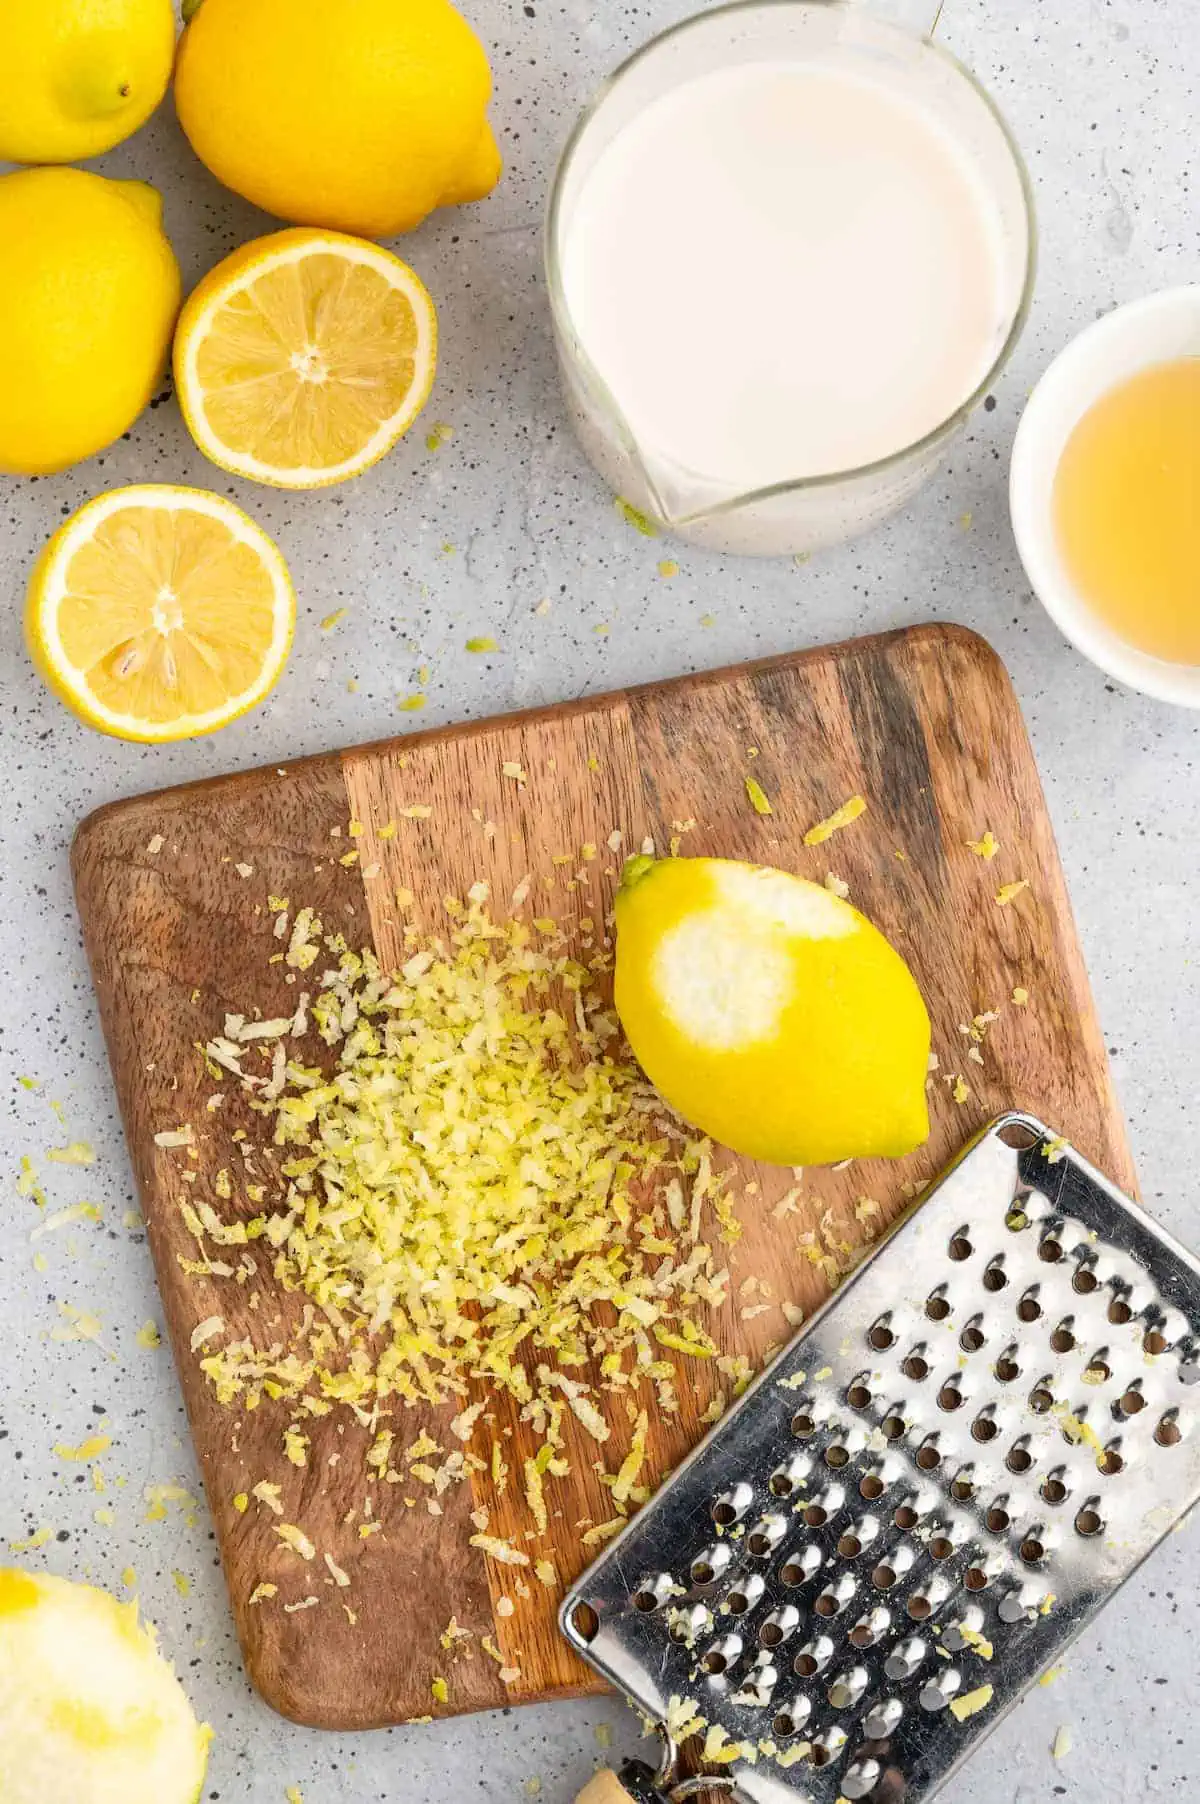 Zesting lemon on a cutting board.